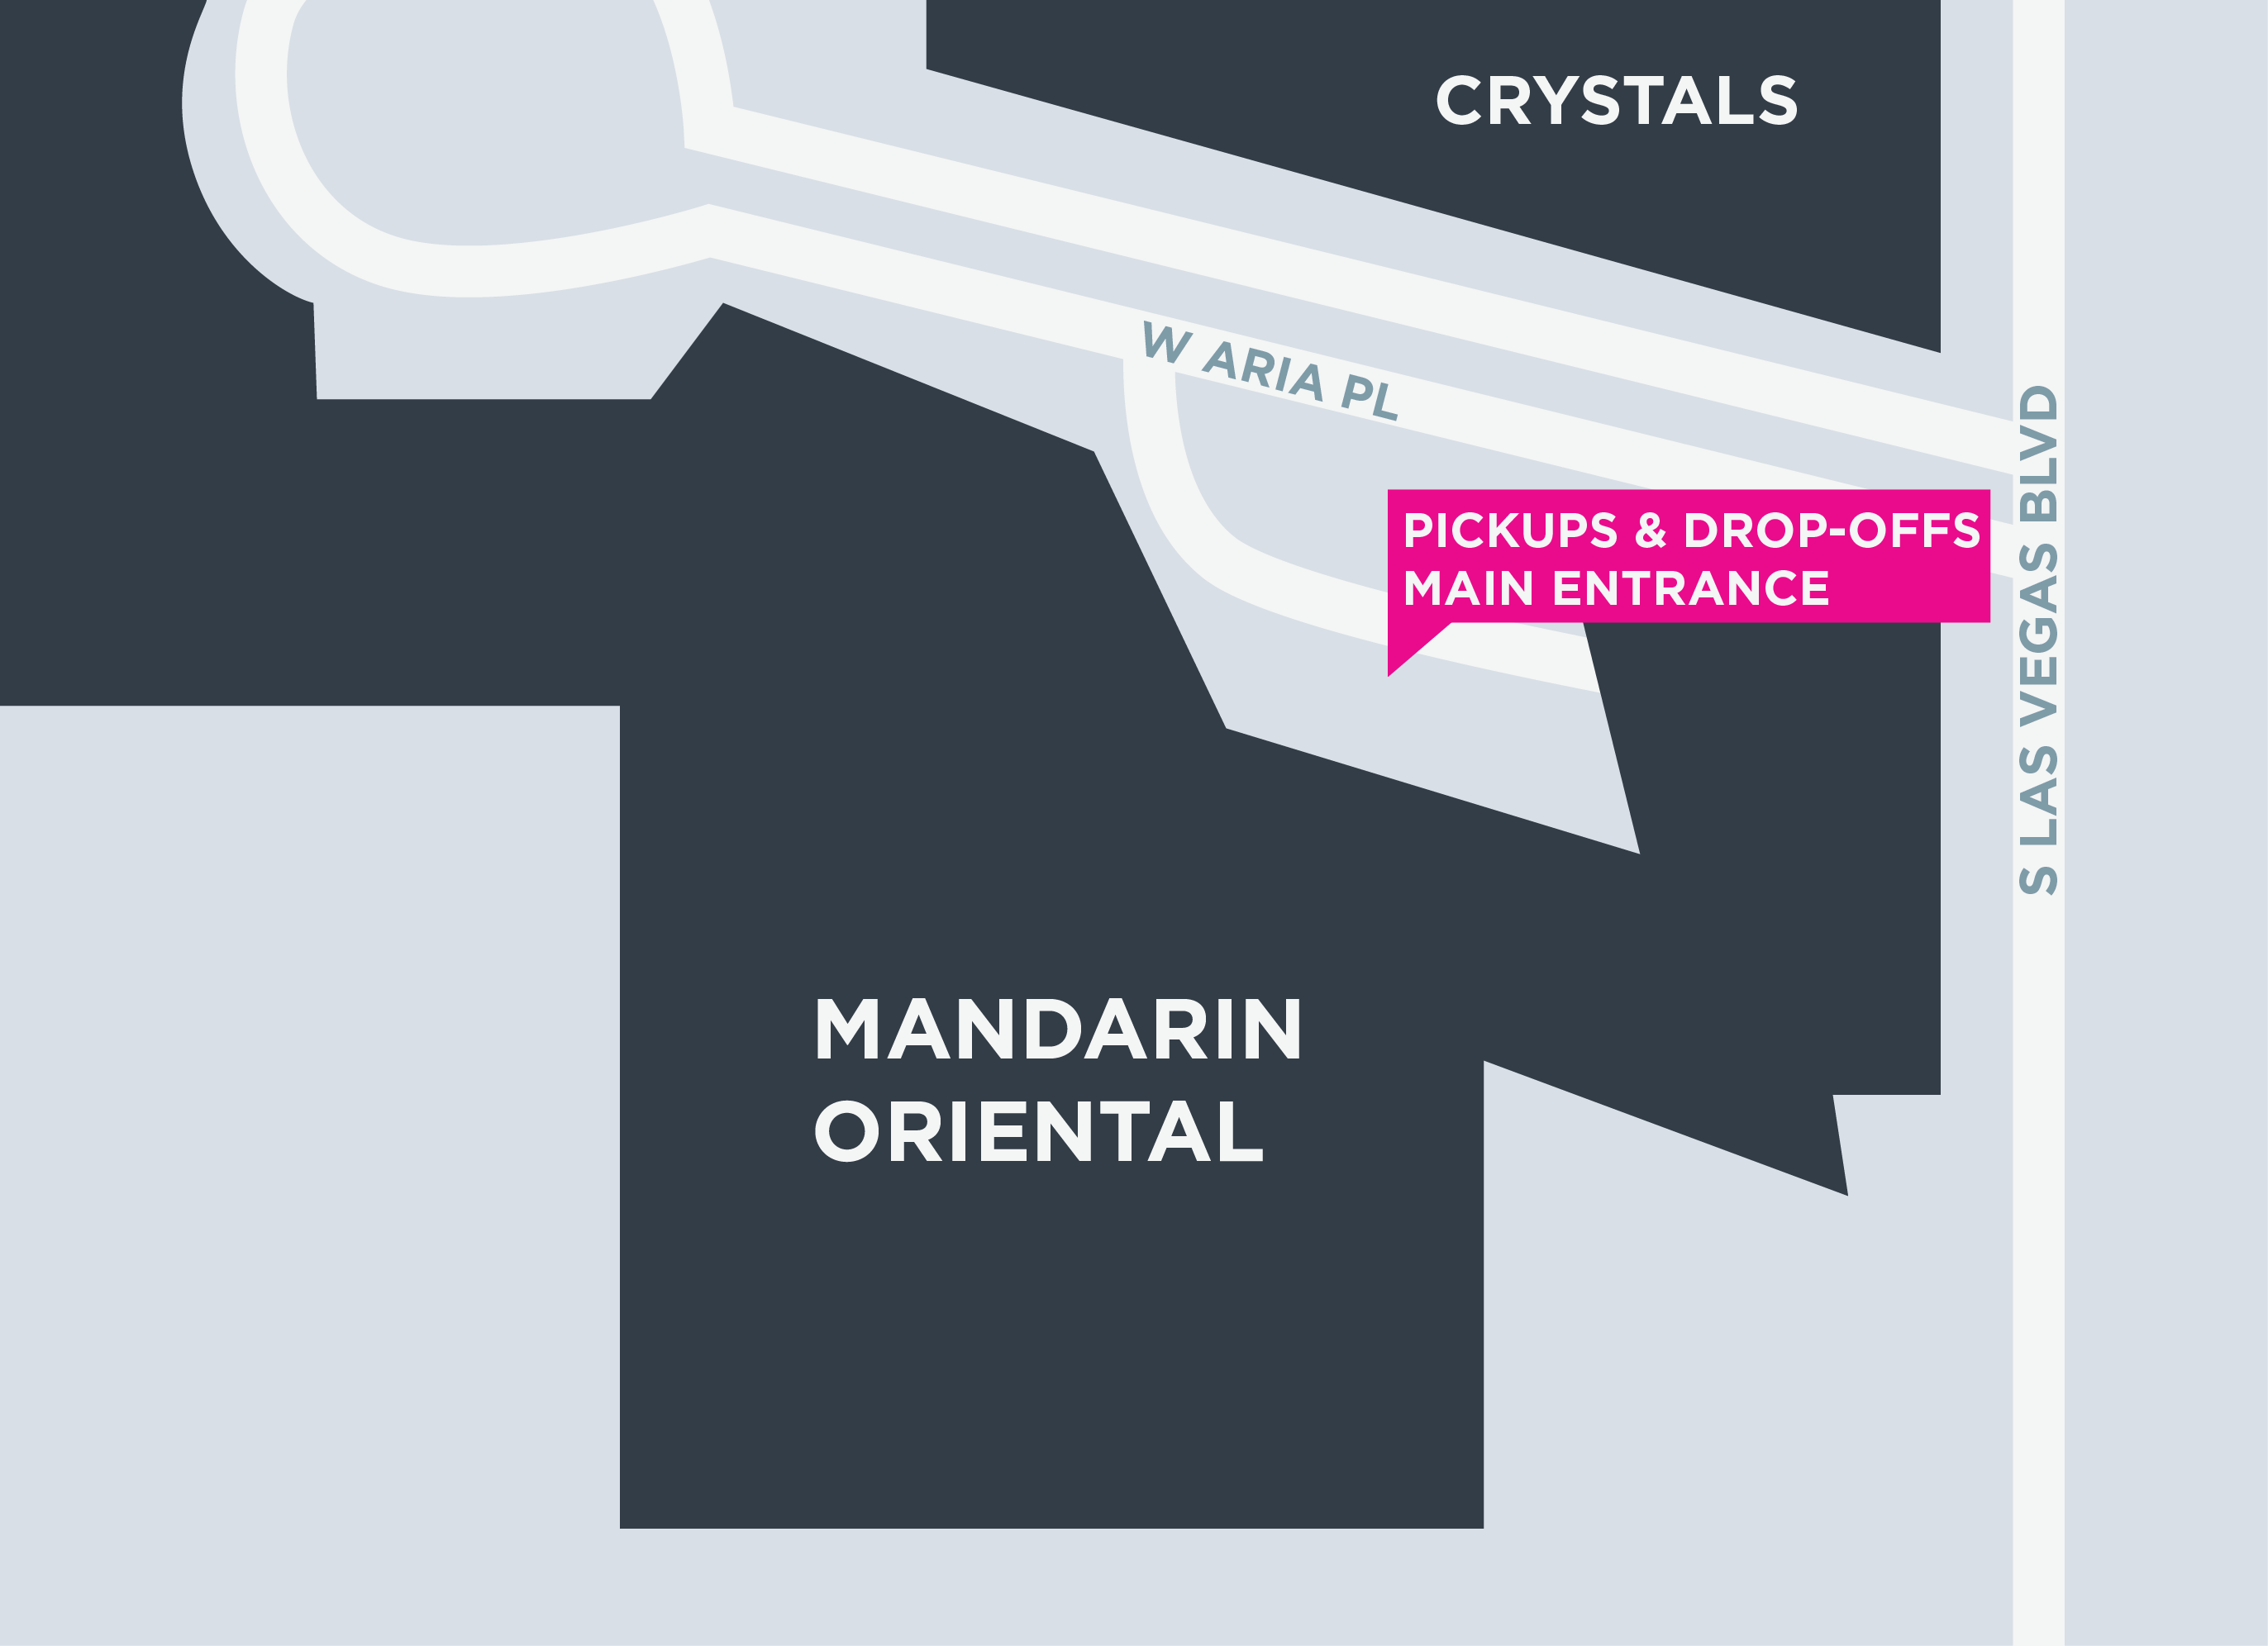 Esta imagem mostra um mapa do Mandarin Oriental, incluindo pontos de encontro e áreas de desembarque.